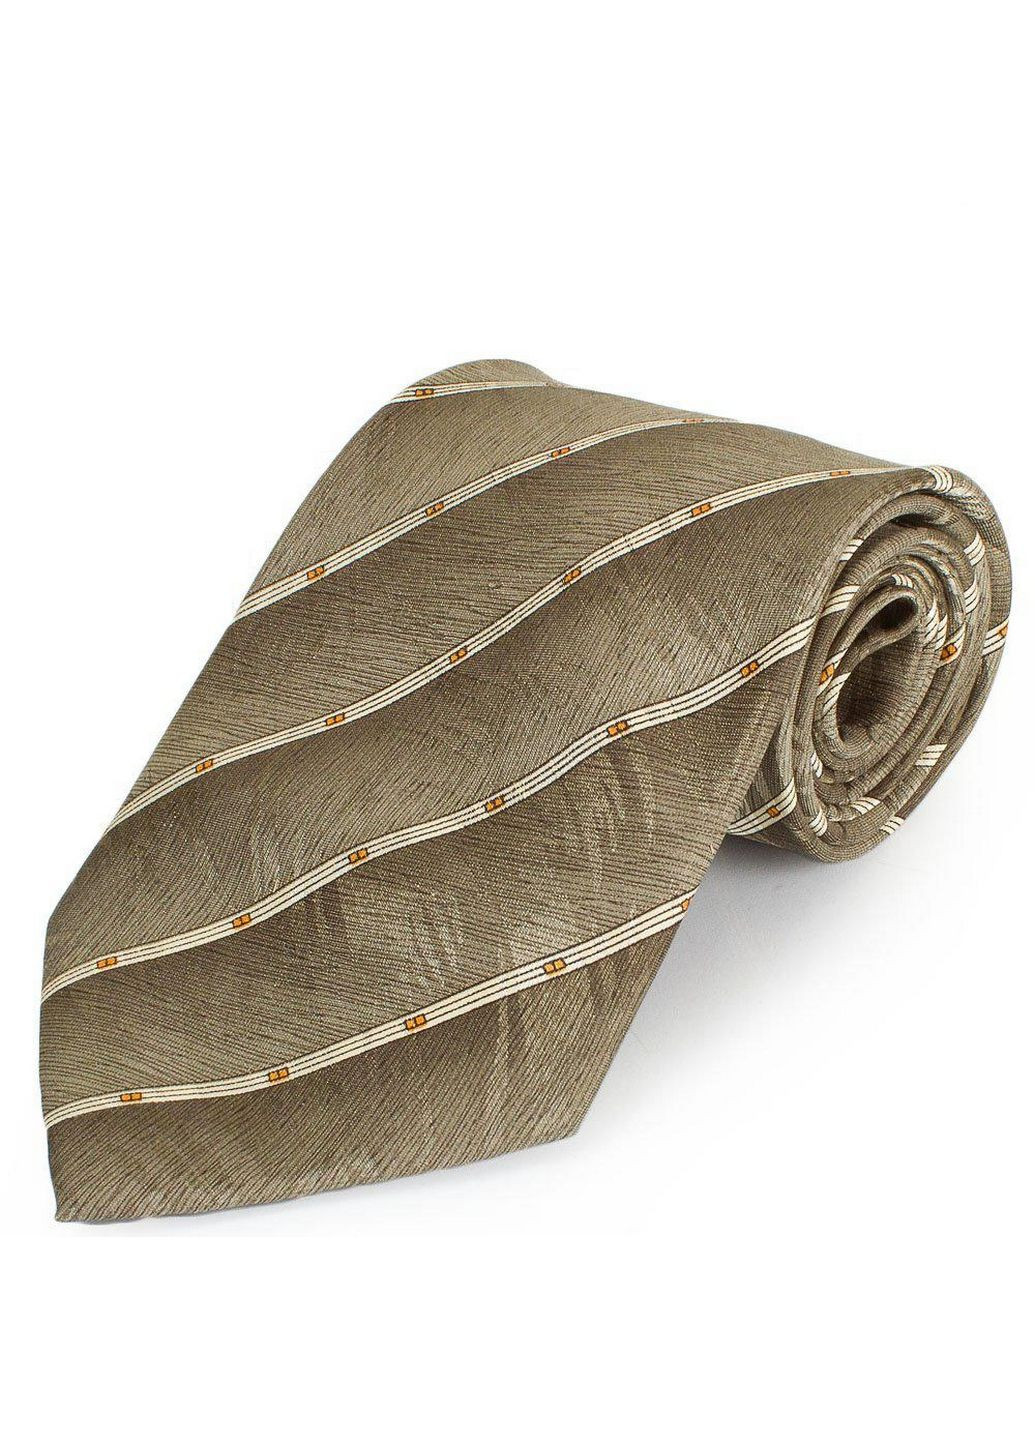 Мужской шелковый галстук Schonau & Houcken (282588330)